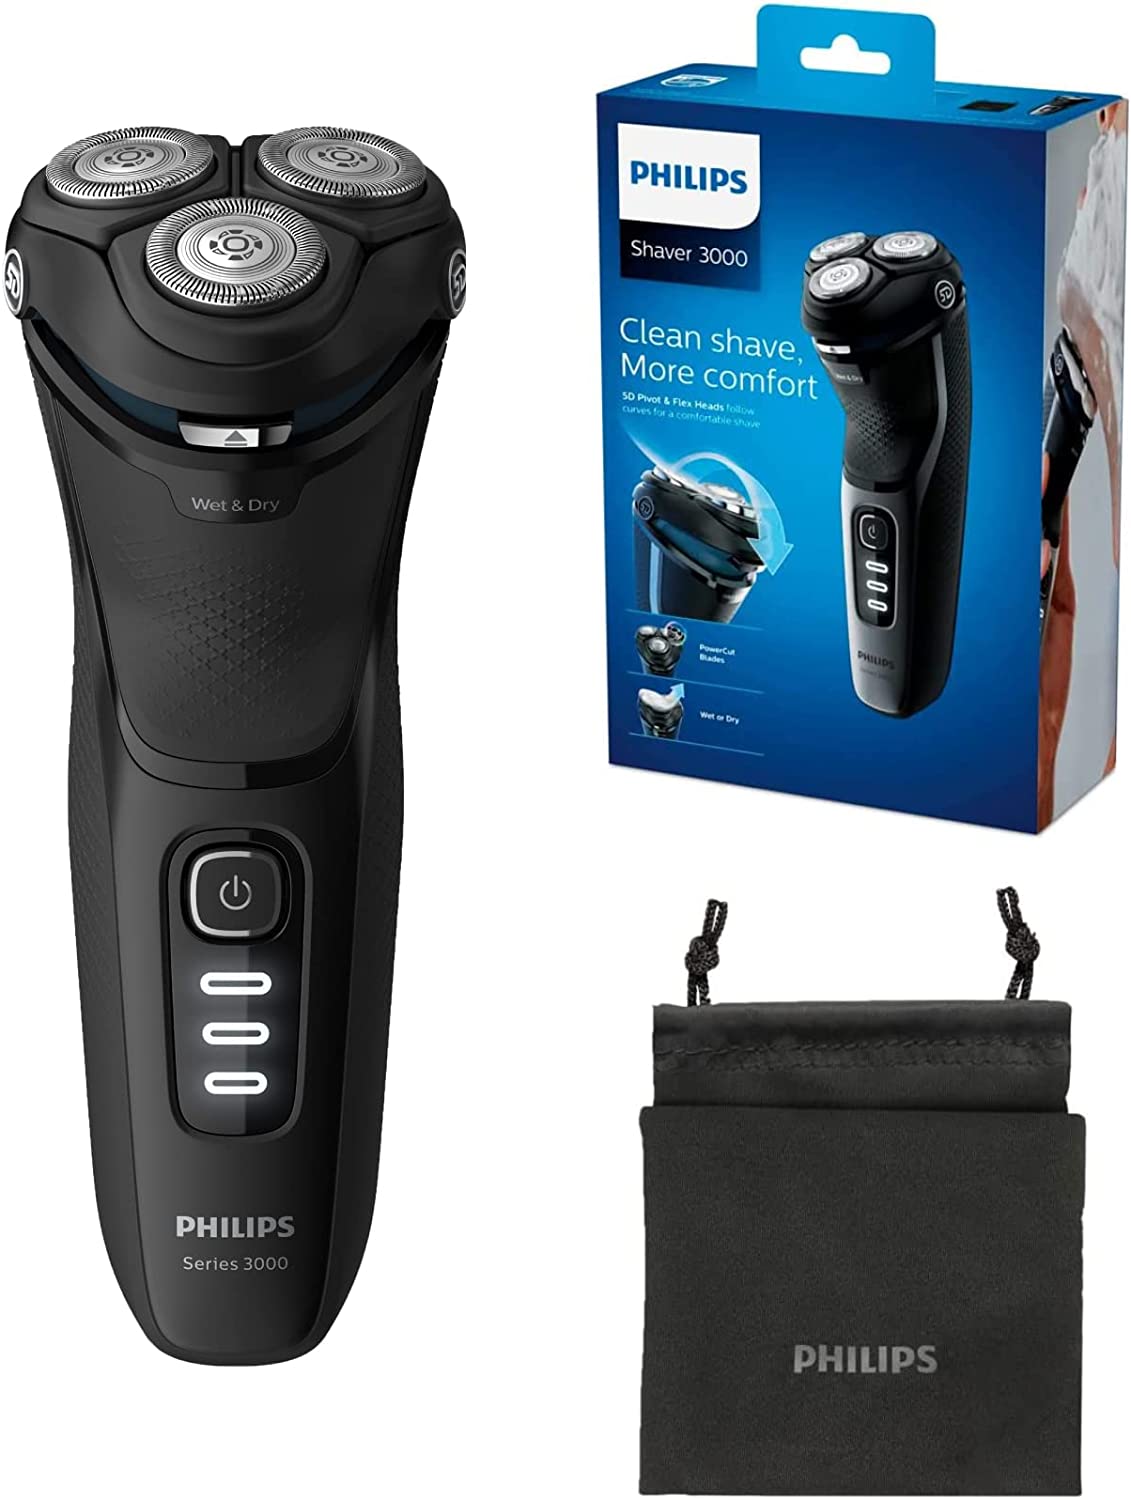 Philips Shaver Series 3000 vs. Philips Shaver Series 7000 vs. Philips Shaver Series 5000 vs. Philips Shaver Series 9000